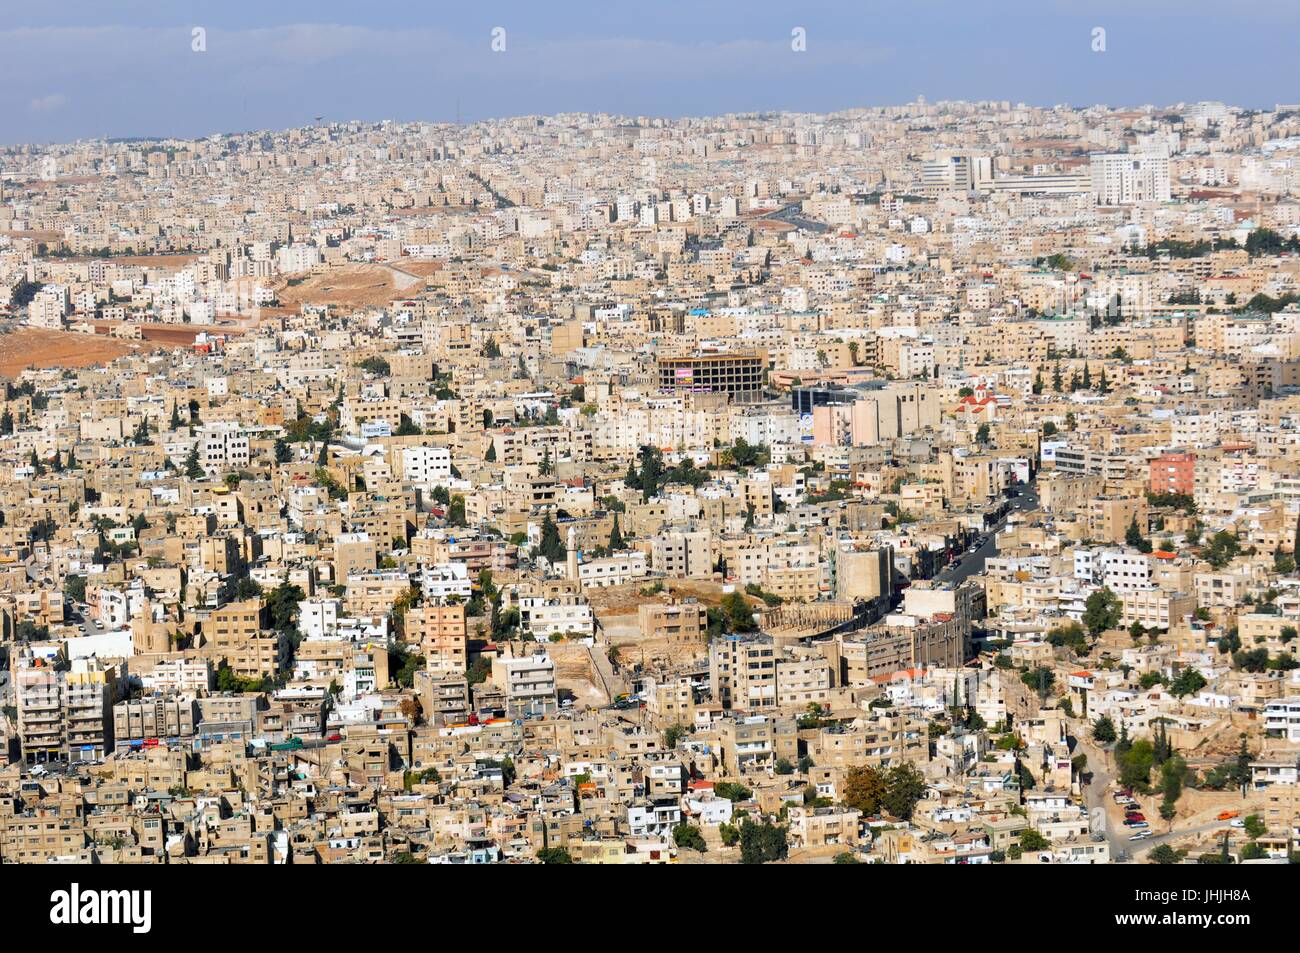 Vue aérienne de la capitale de l'Amman, la capitale du Royaume hachémite de Jordanie le 30 octobre 2009 à Amman, Jordanie. (Photo par Jim Greenhill via Planetpix) Banque D'Images